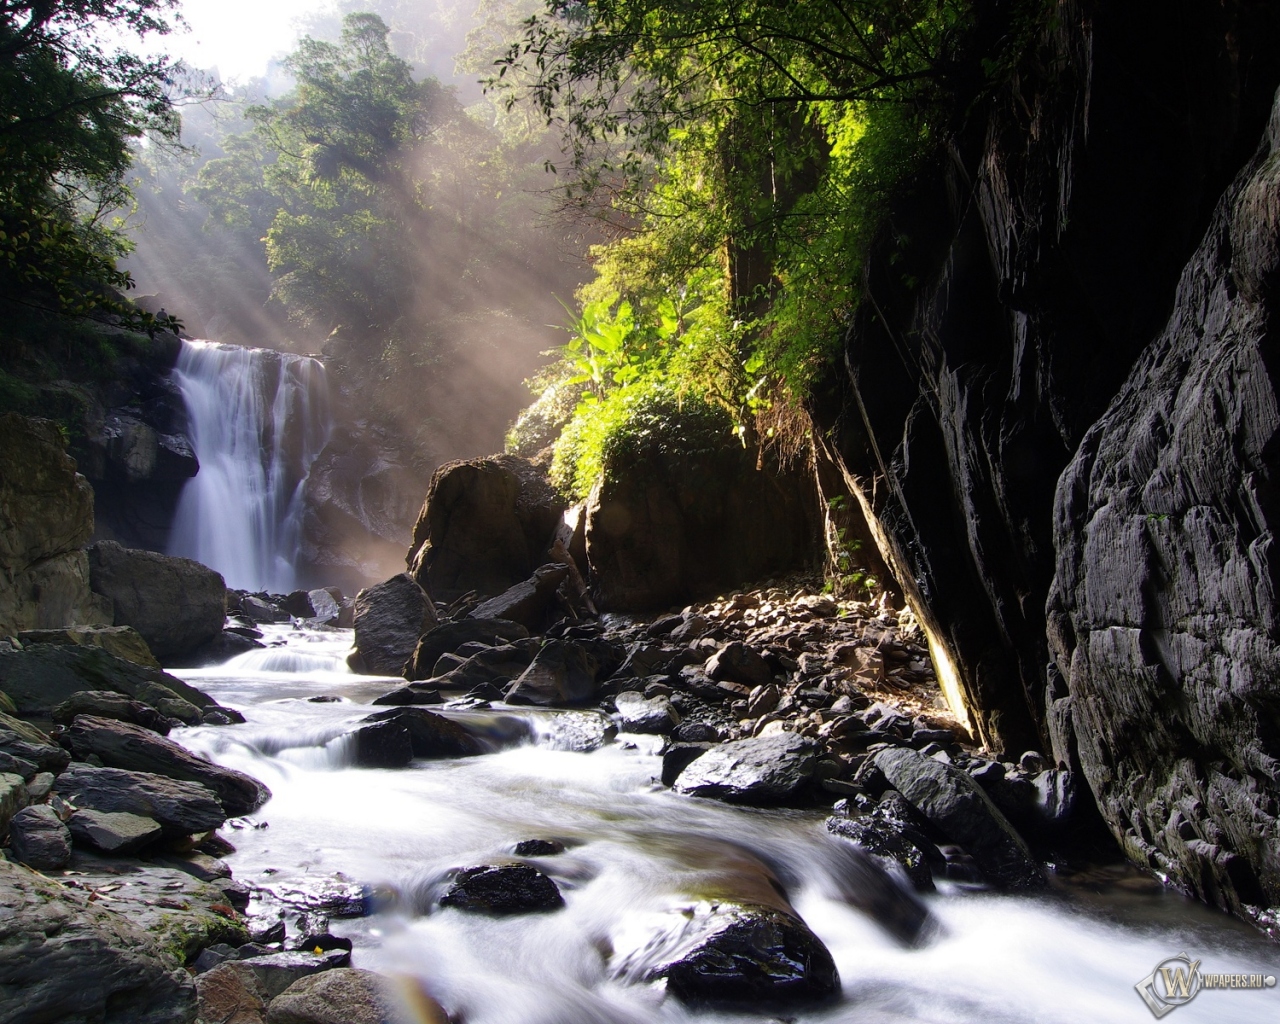 Neidong waterfall 1280x1024